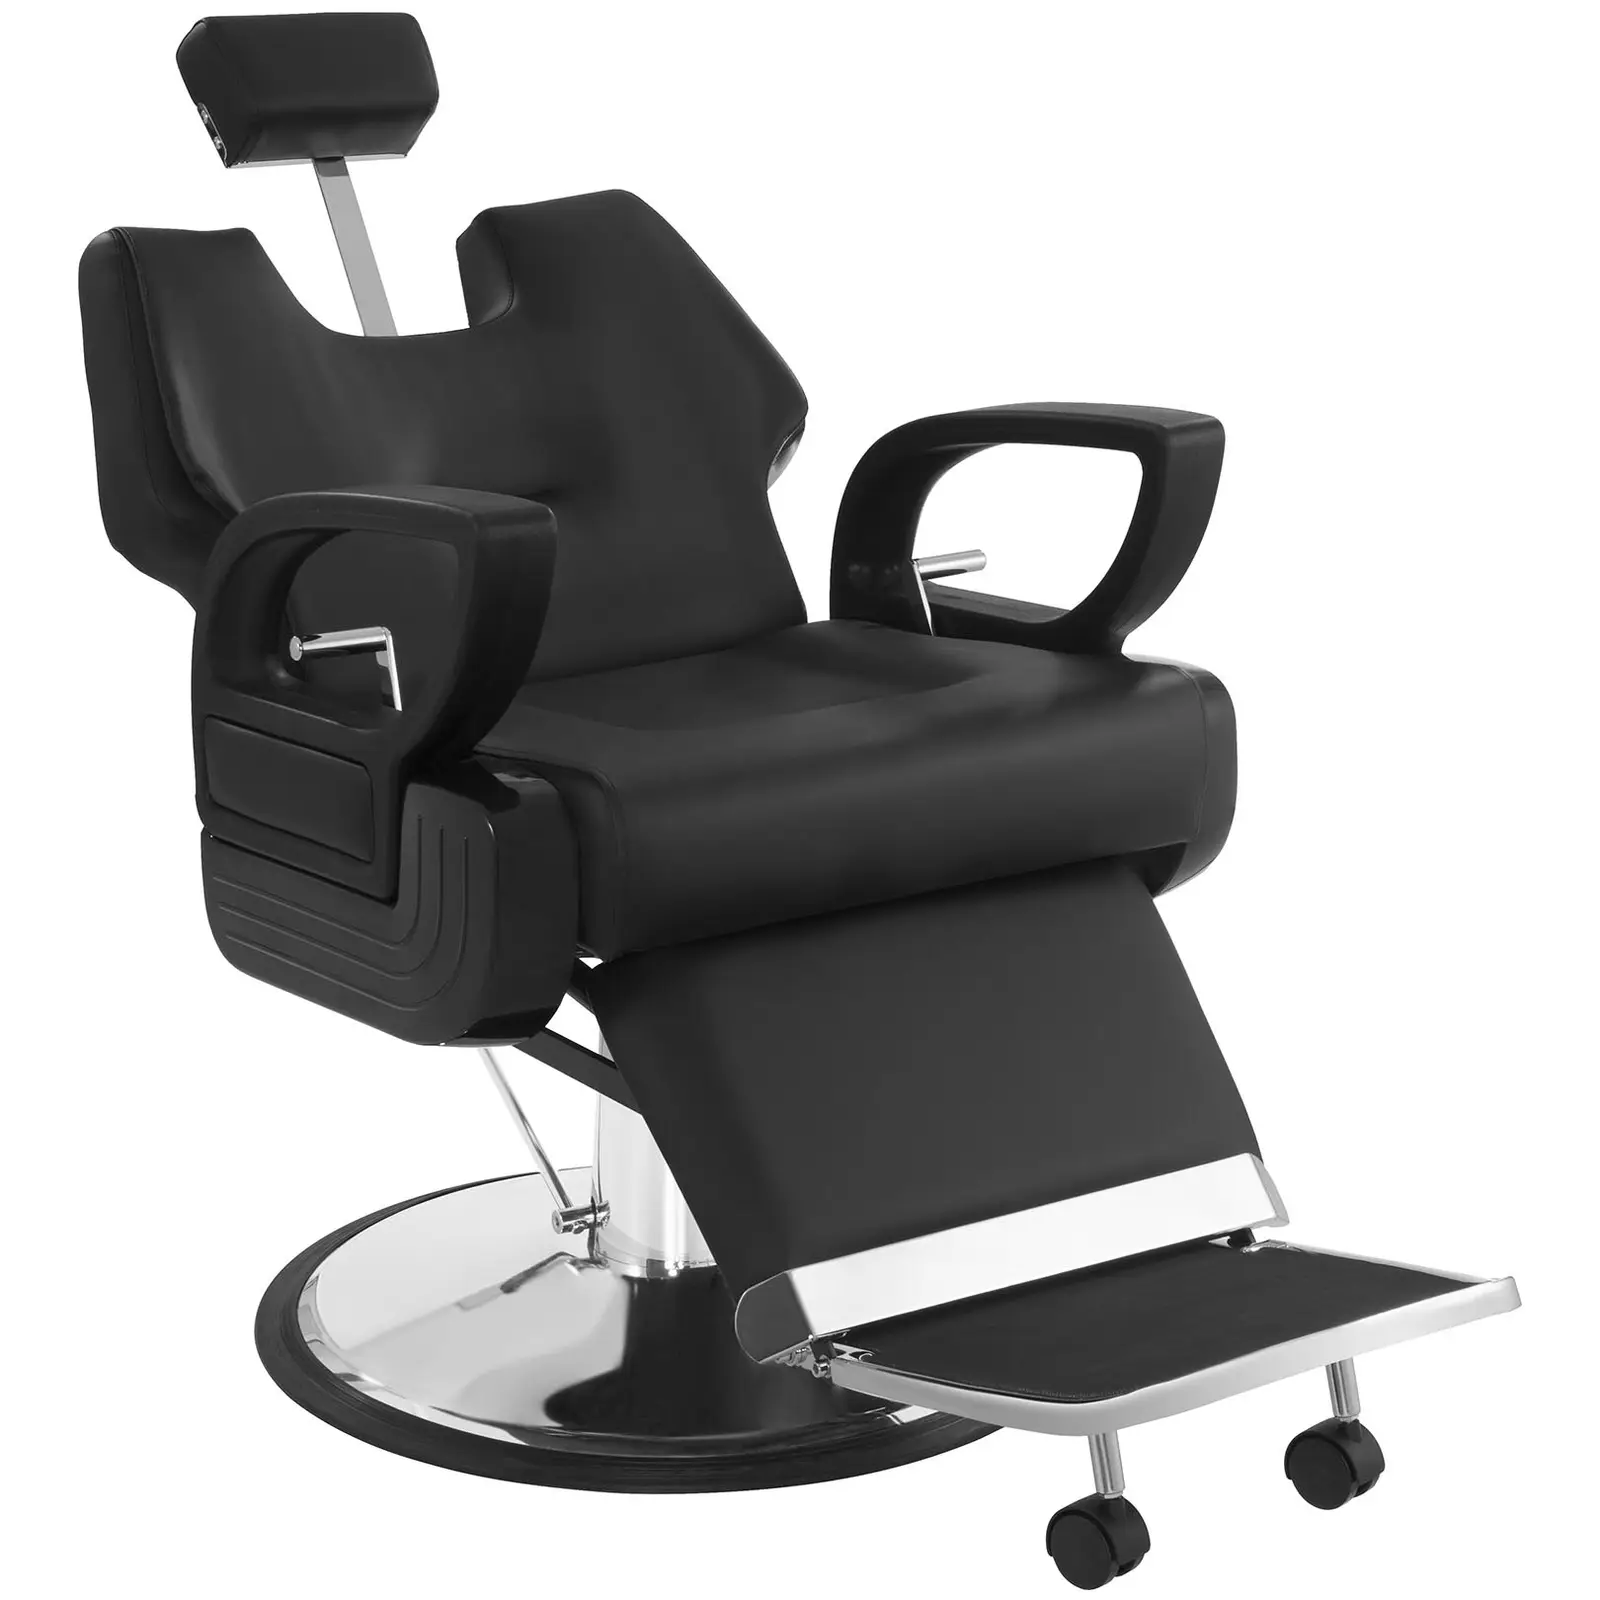 Fotel fryzjerski - 575-710 mm - Czarny